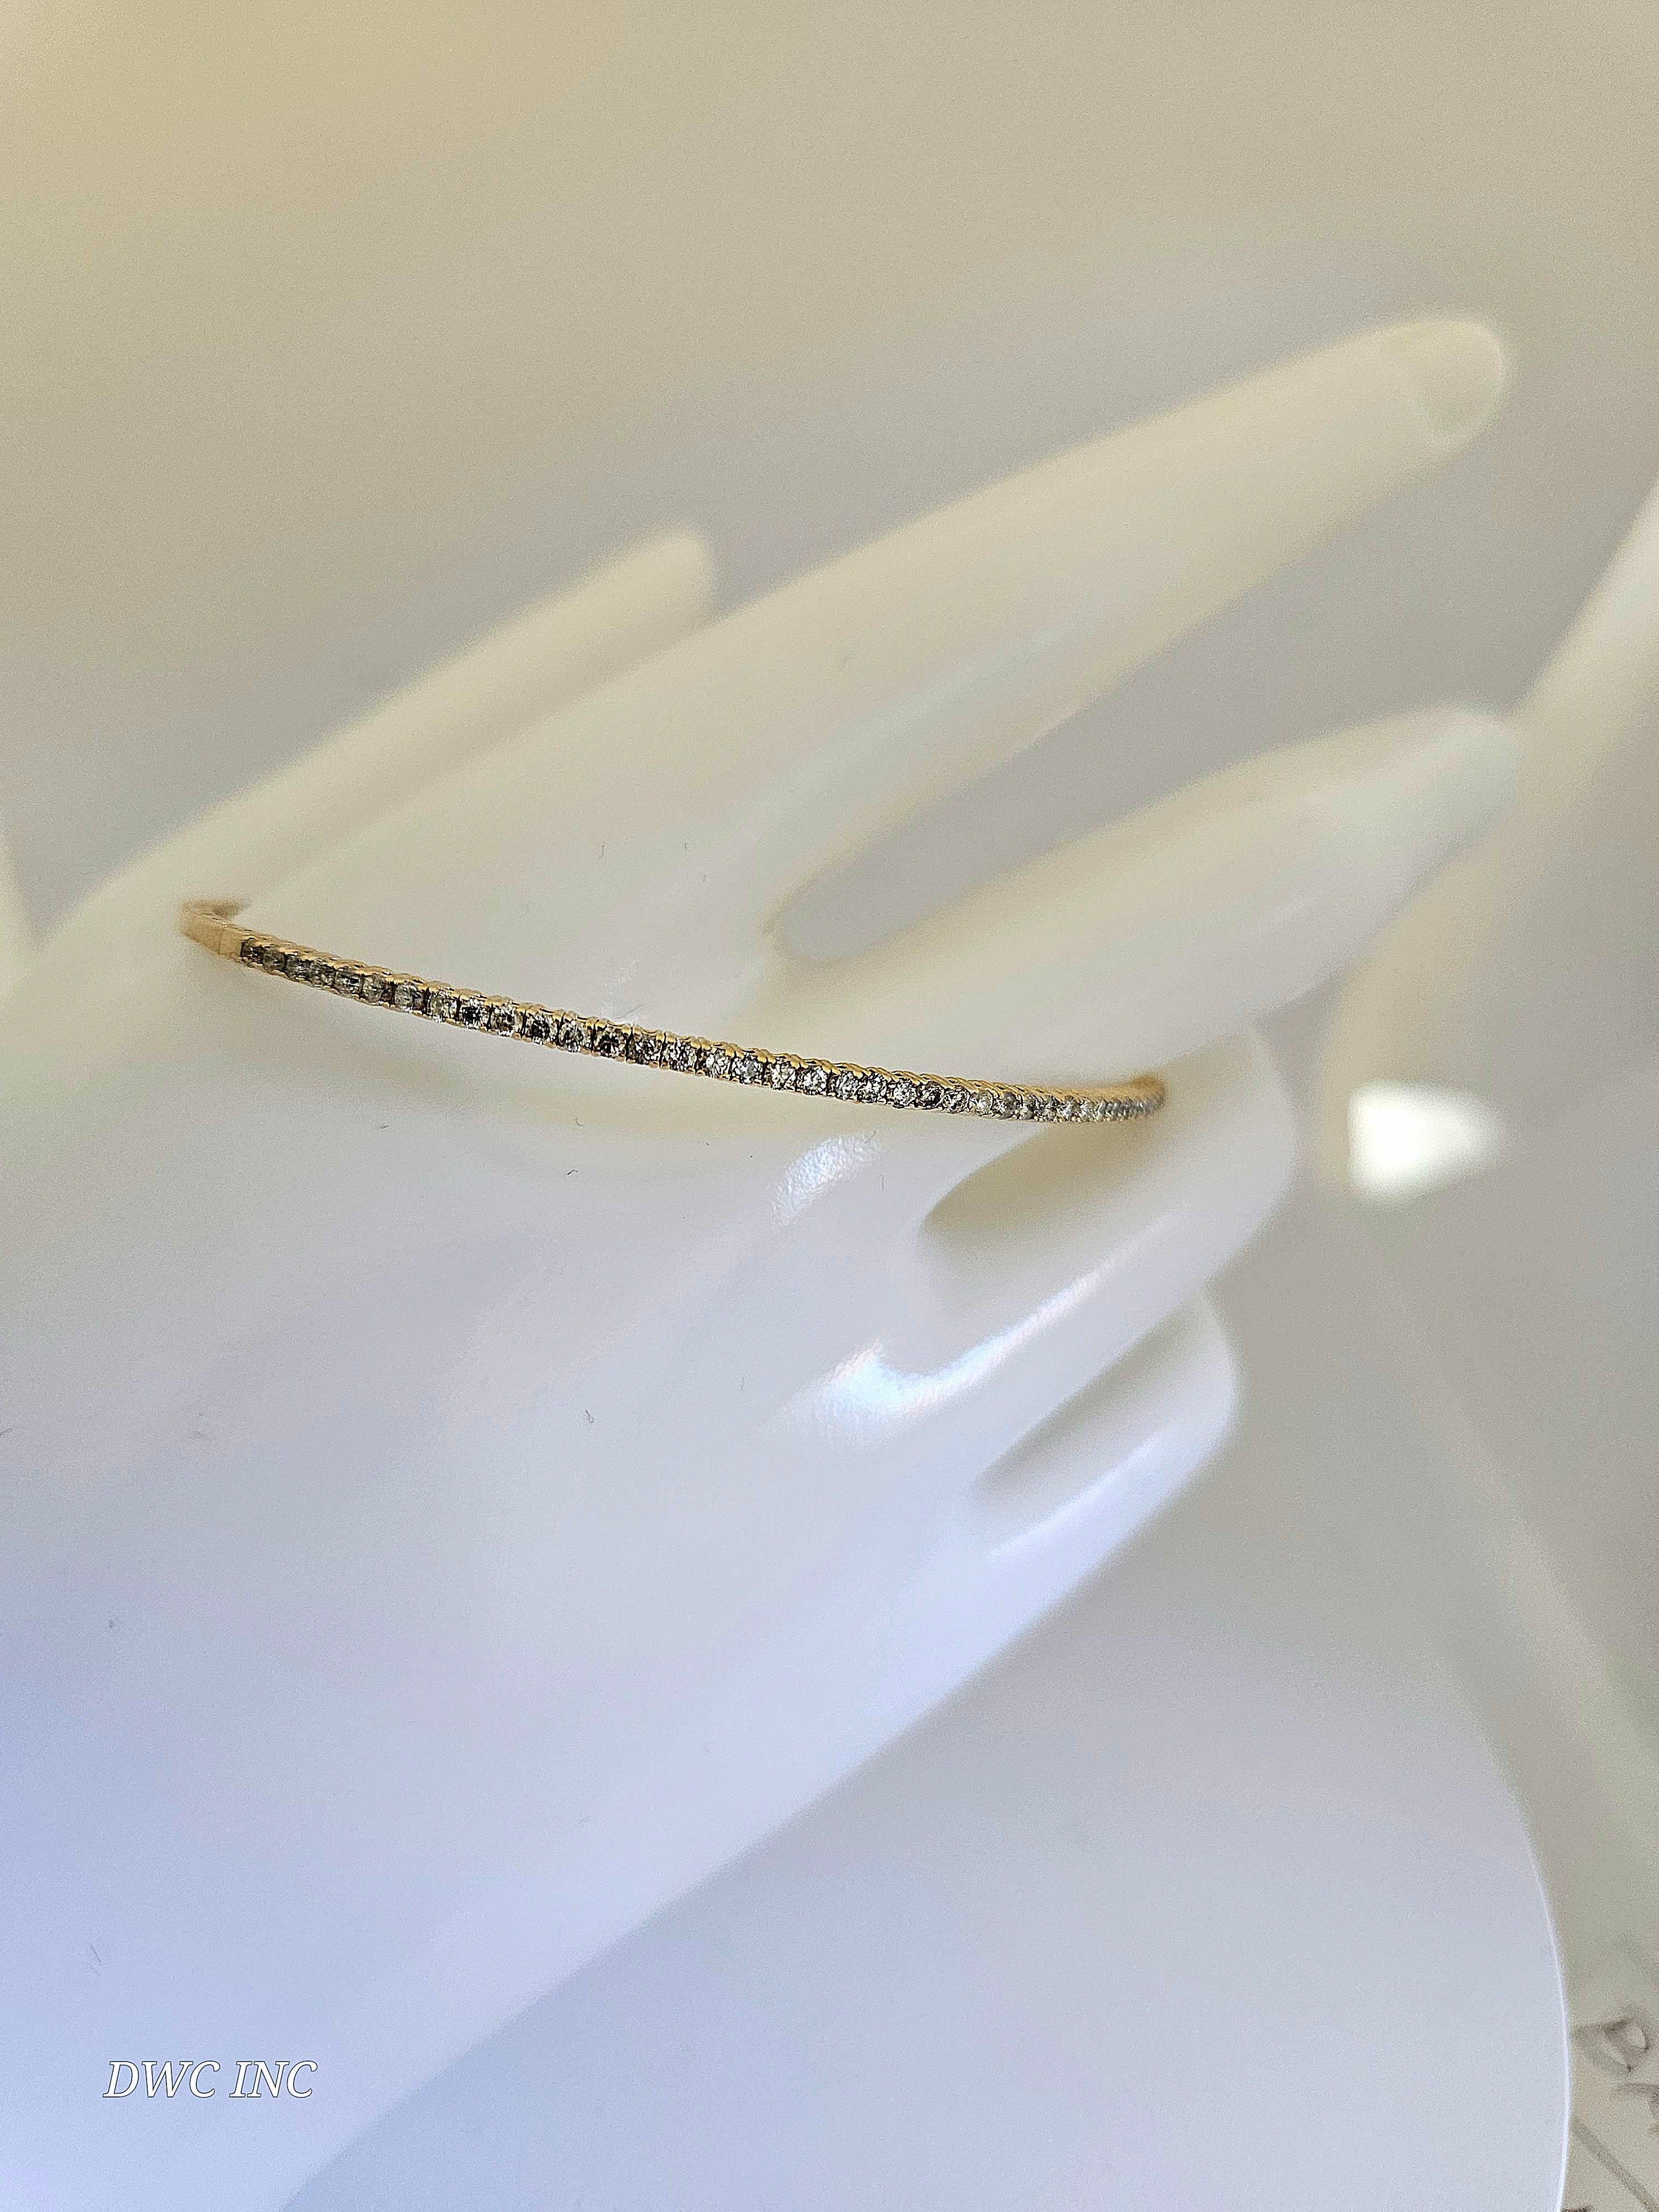 0.68 Carat Diamants naturels Mini Bangle bracelet coupe ronde-brillante  Or jaune 14k. 
7 pouces. 41pcs Moyenne H-,I  1,7 mm de large. Très brillant 5.29 grammes.

*Expédition gratuite à l'intérieur des États-Unis